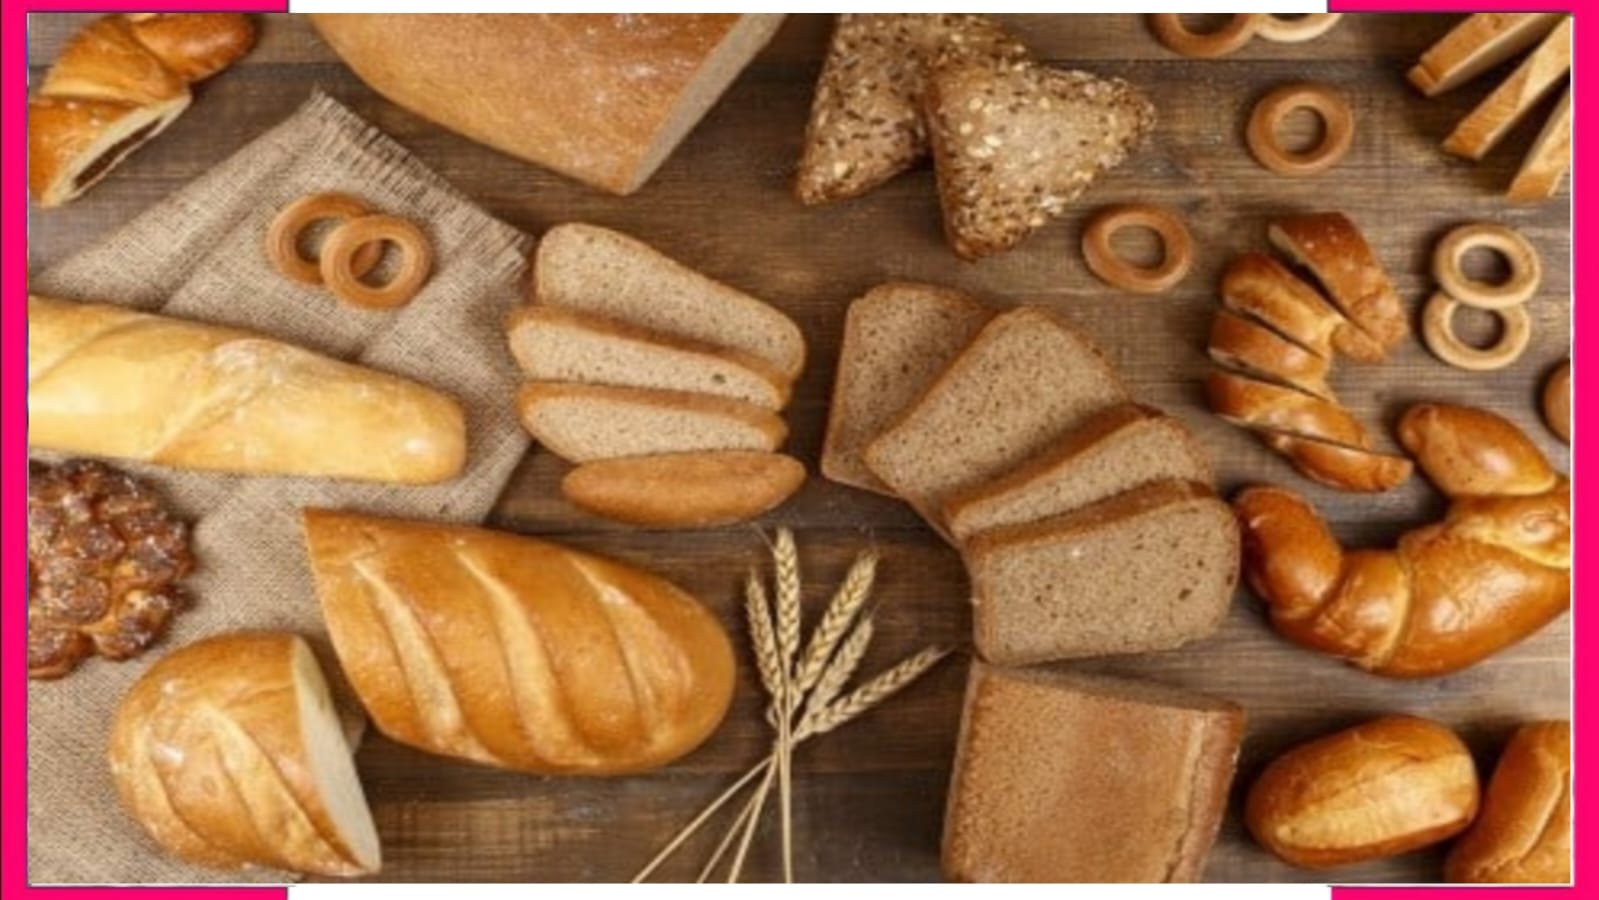 Bread harmful effects